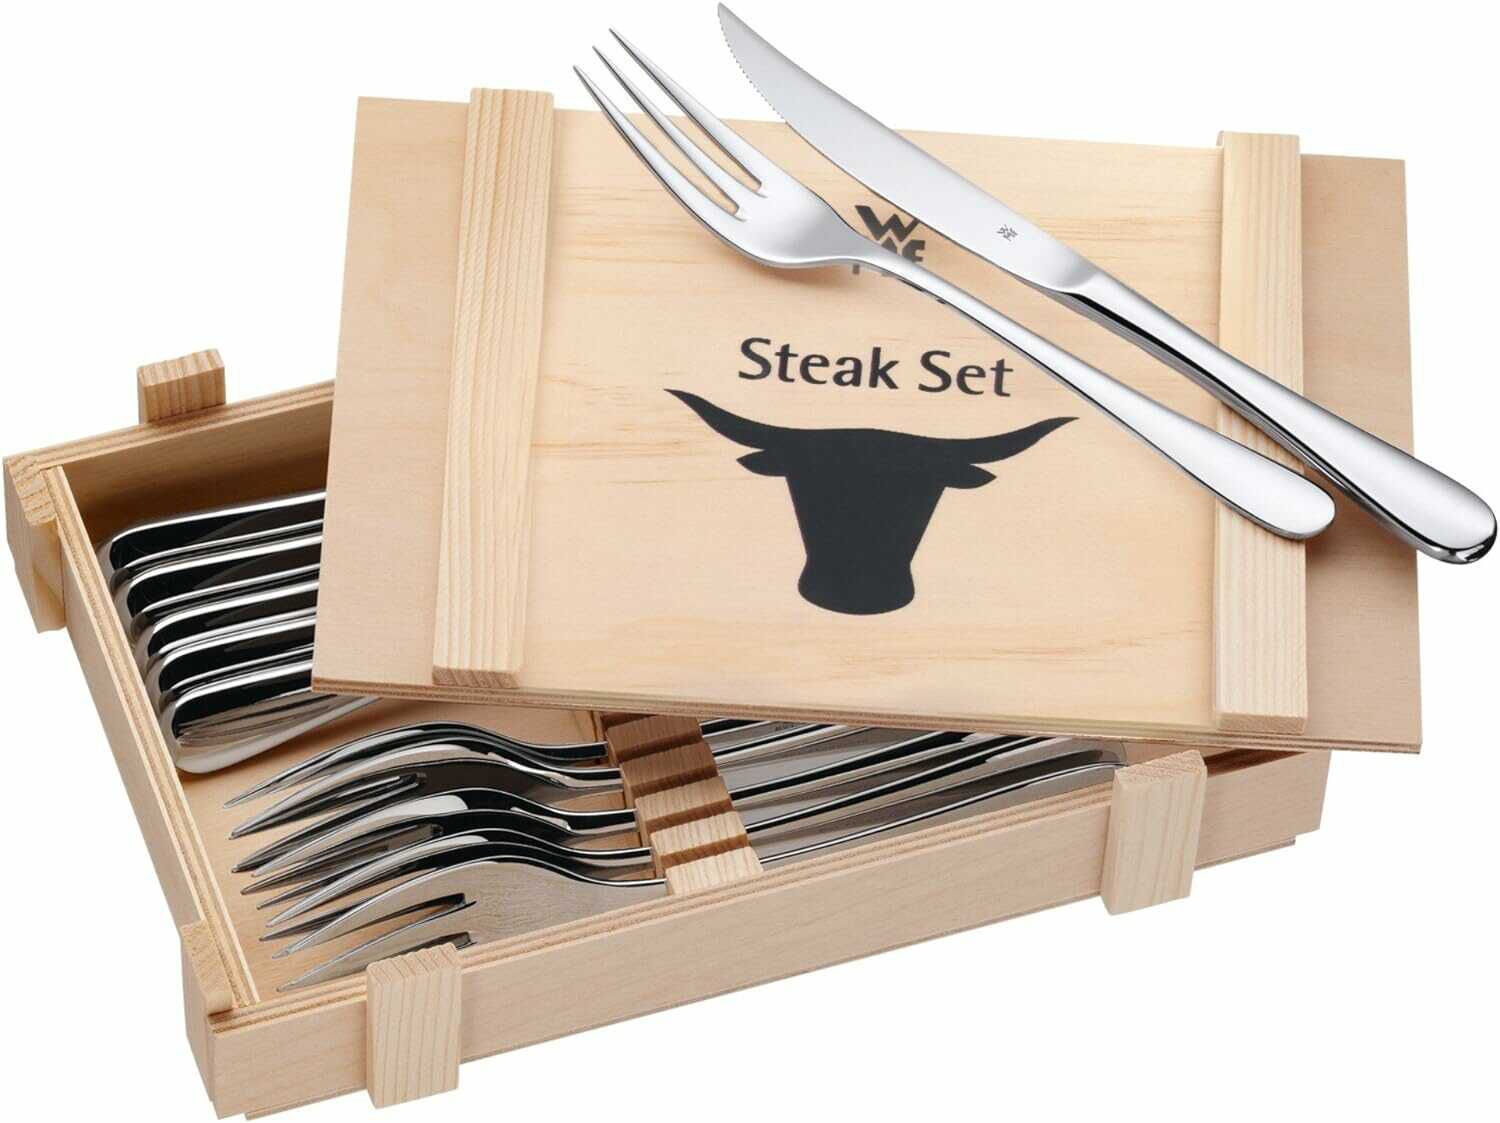 WMF Steakbesteck / Grillbesteck  12 teilig für 22,99€ statt 29,94€